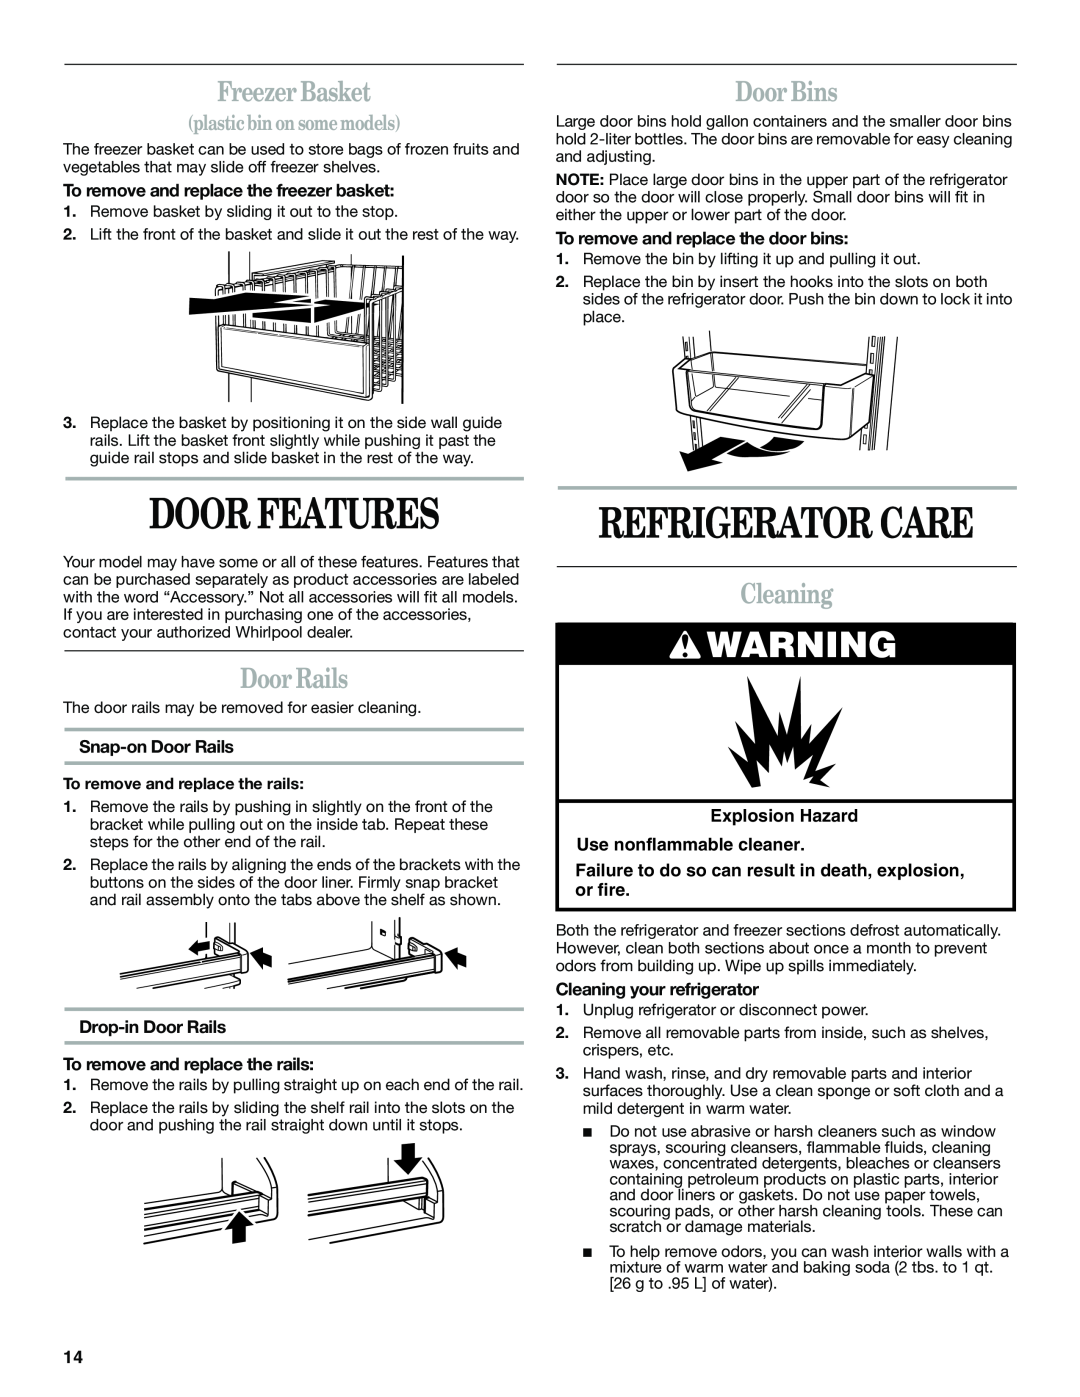 Whirlpool 6GC5THGXKS00 manual Door Features, Refrigerator Care, Freezer Basket, Door Bins, Door Rails, Cleaning 